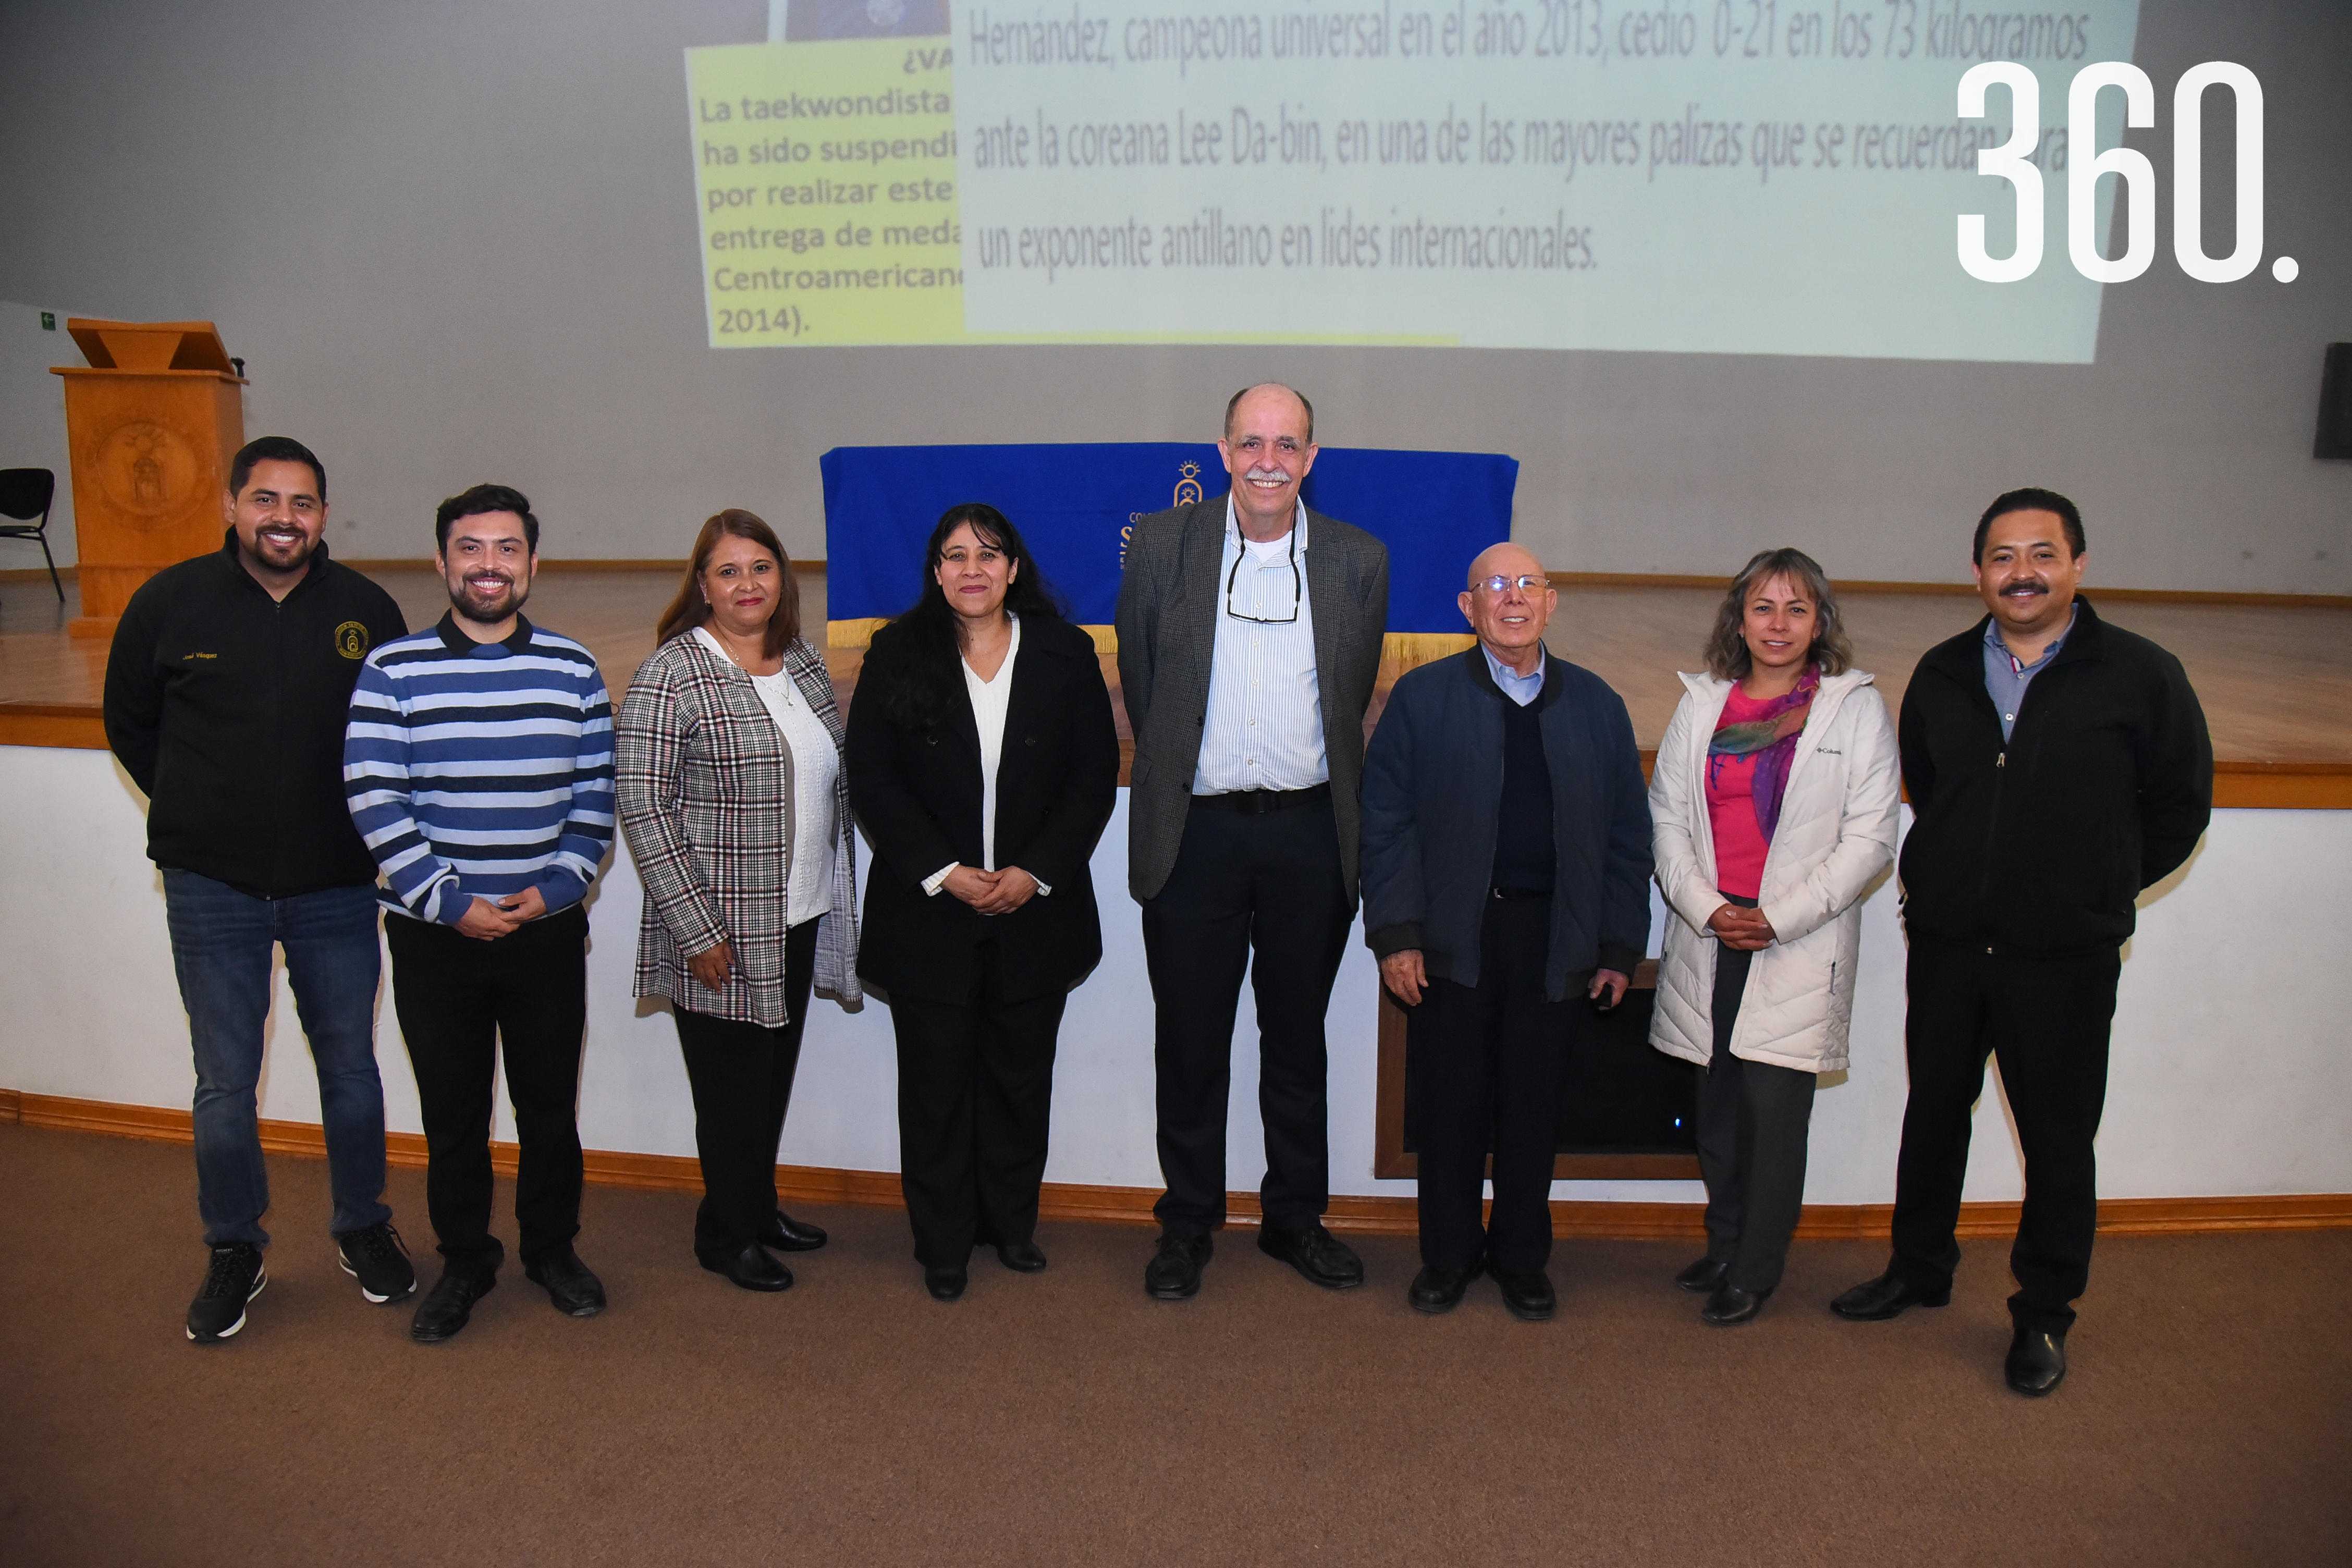 José Vásquez, Gerardo García, Leticia Ruiz, Claudia Vélez, Jesús Amaya Guerra, P. Rodolfo Escobedo Díaz de León, Liliana Morales y Samuel Arriaga.